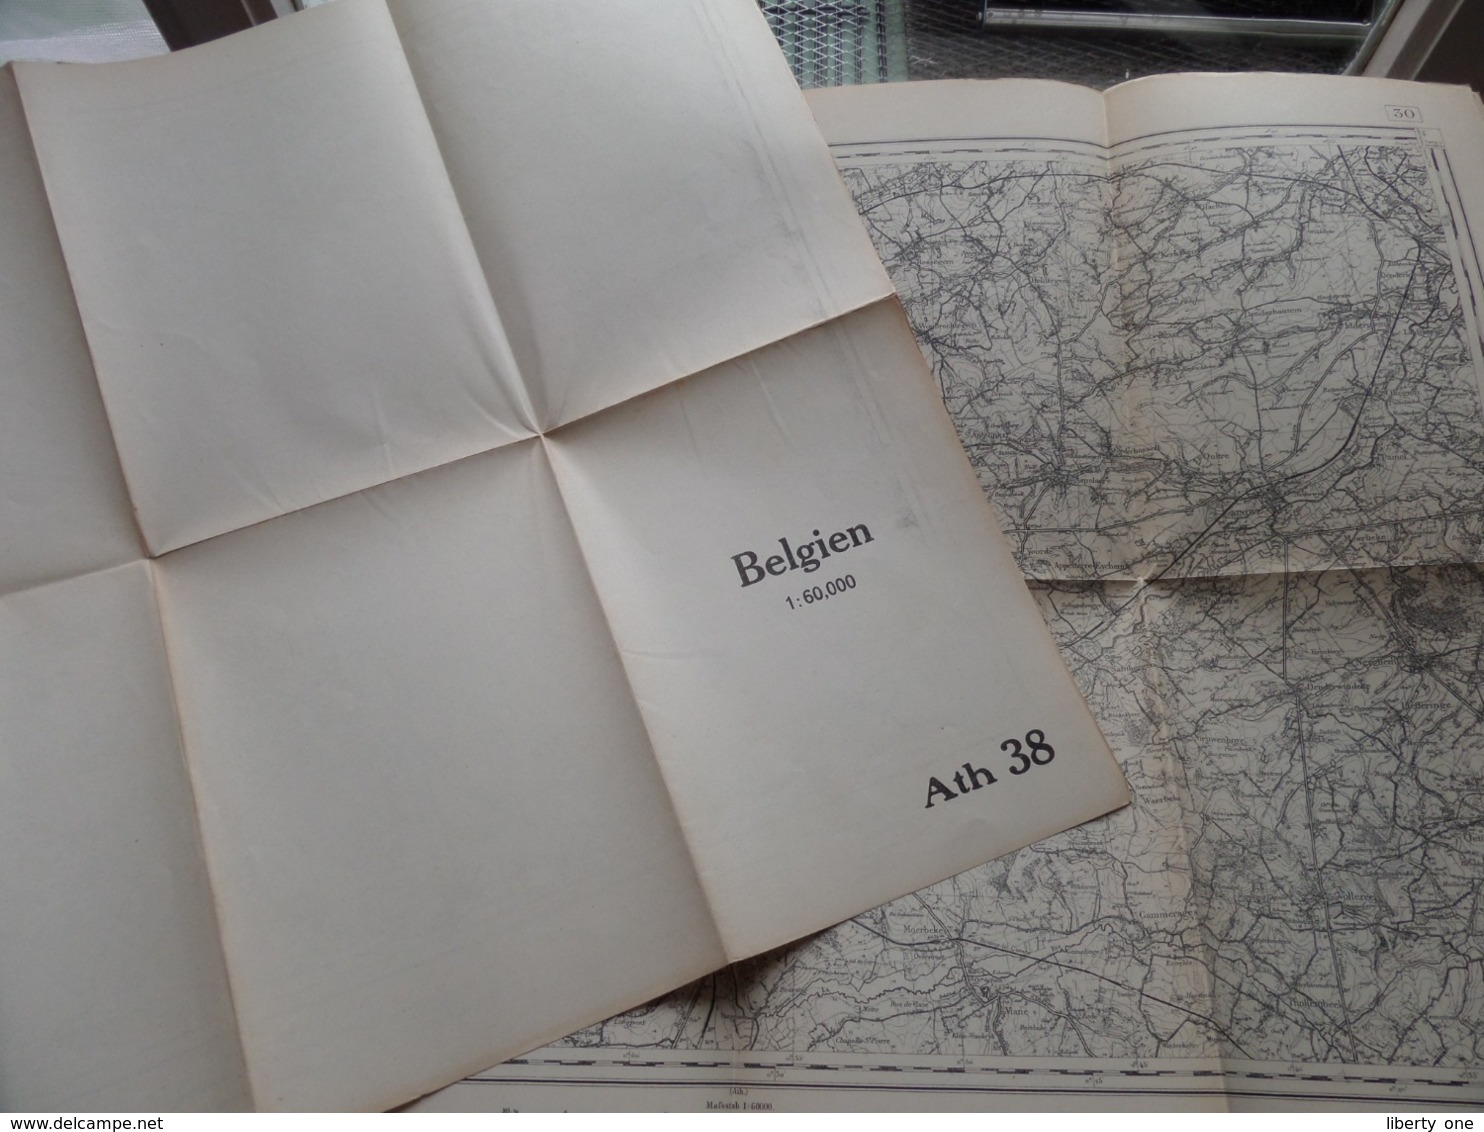 ATH ( 38 ) Belgien Categorie Stafkaart 1:60.000 ( Kaarten Uit Verzameling / Formaat 60 X 42 Cm. ) Zie Foto's ! - Europa